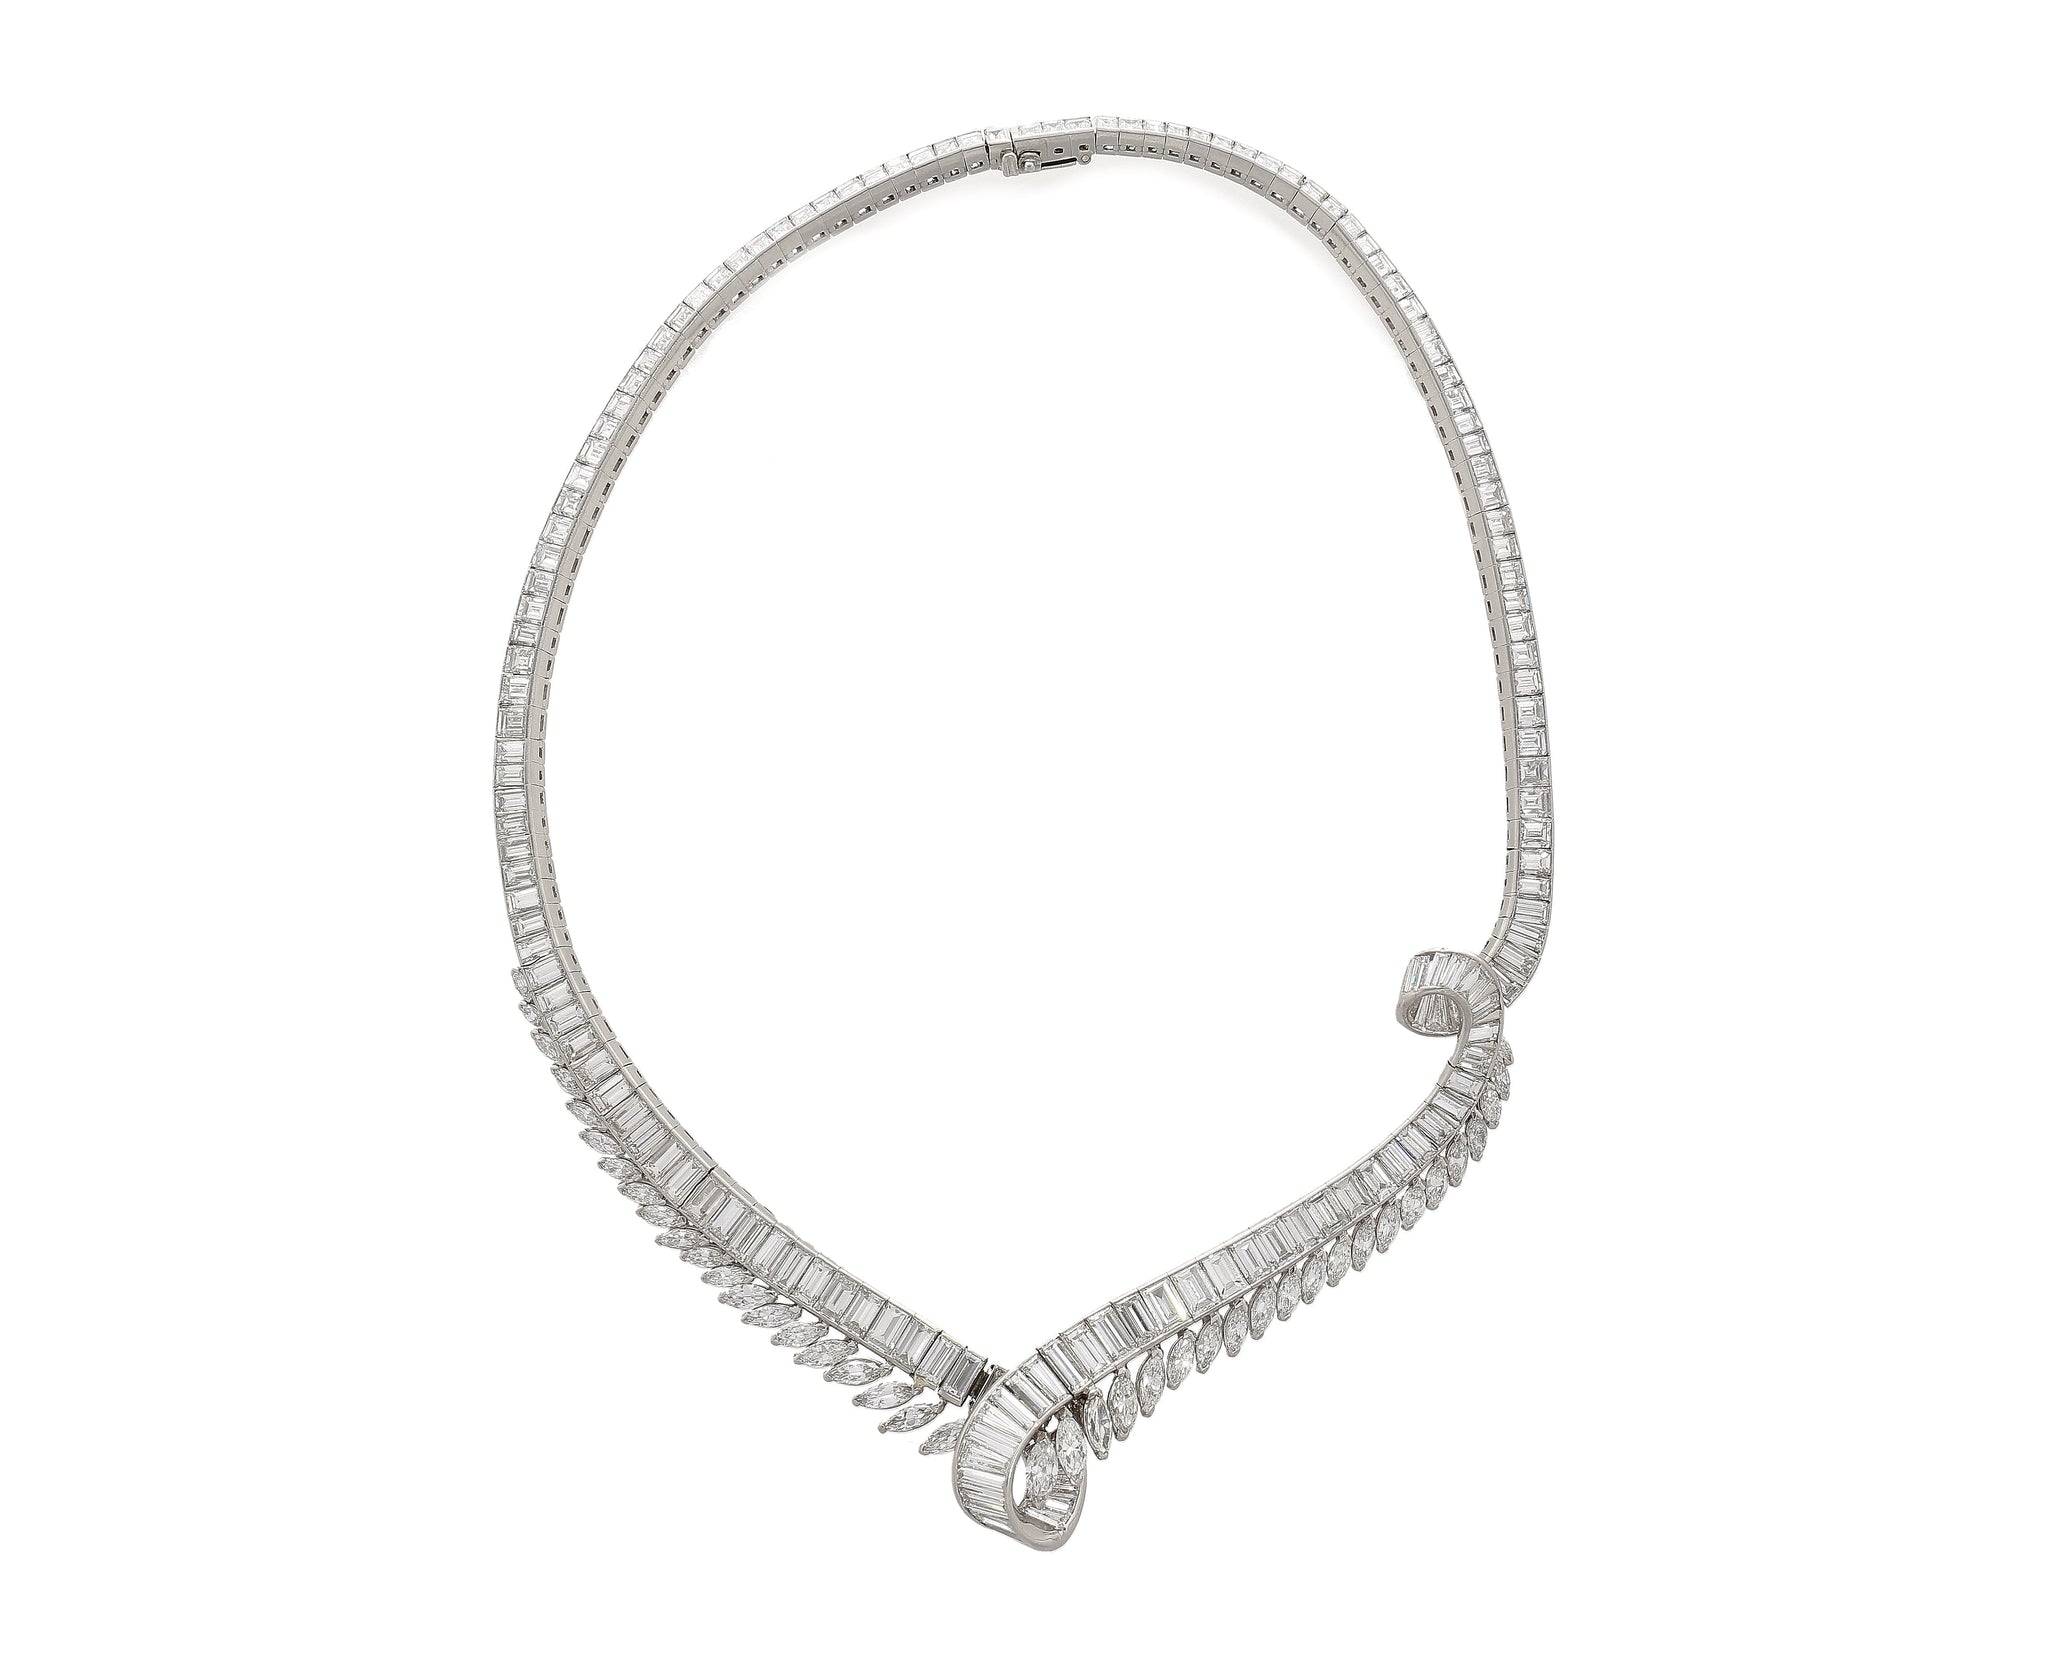 40 Carat Marquise And Baguette Cut Diamond Chandelier Platinum Choker Necklace